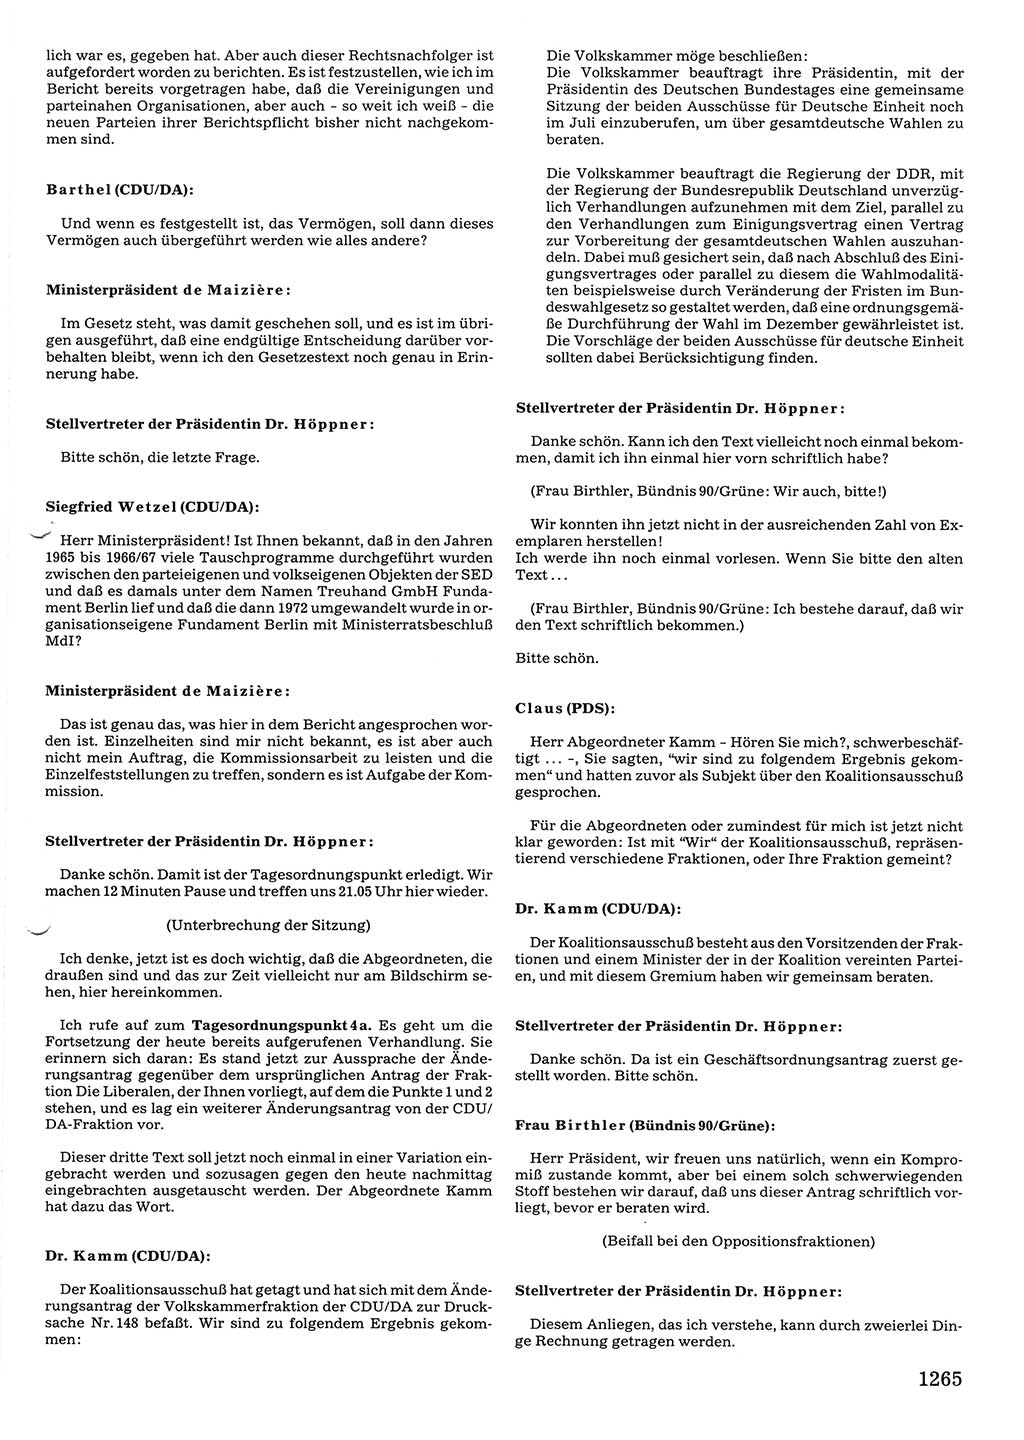 Tagungen der Volkskammer (VK) der Deutschen Demokratischen Republik (DDR), 10. Wahlperiode 1990, Seite 1265 (VK. DDR 10. WP. 1990, Prot. Tg. 1-38, 5.4.-2.10.1990, S. 1265)